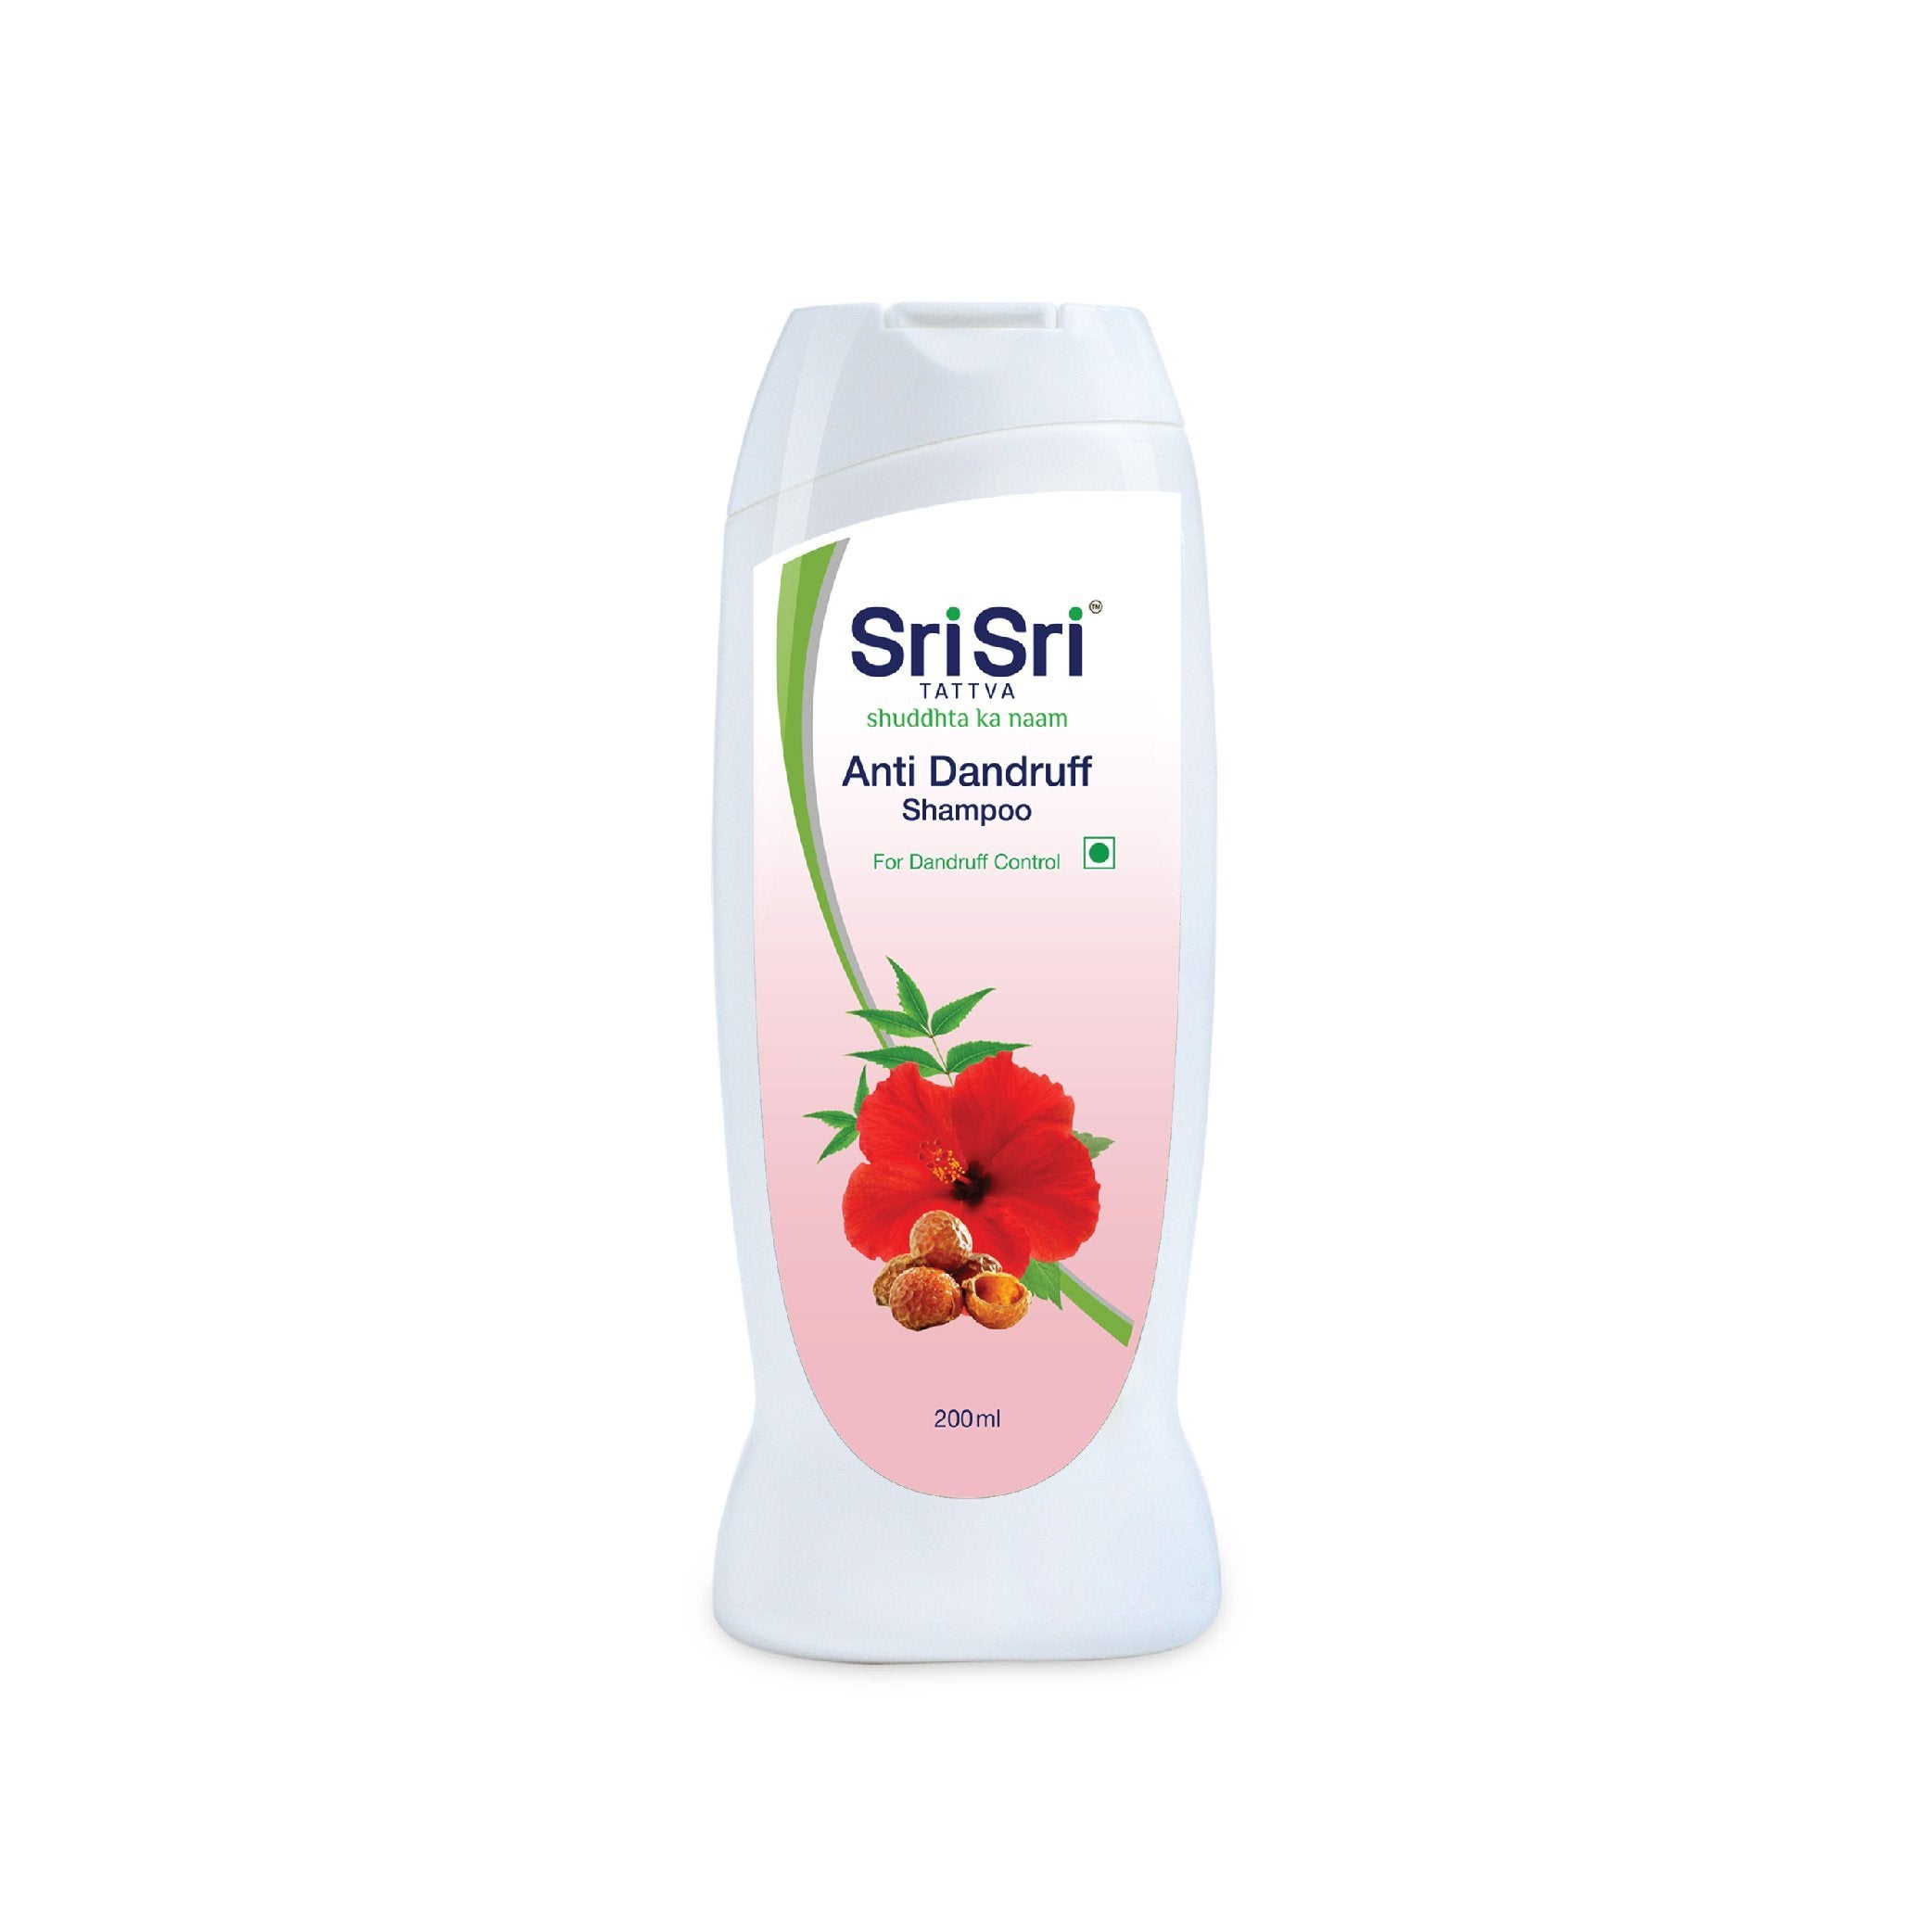 Anti Dandruff Shampoo - Dandruff Control, 200ml - Sri Sri Tattva